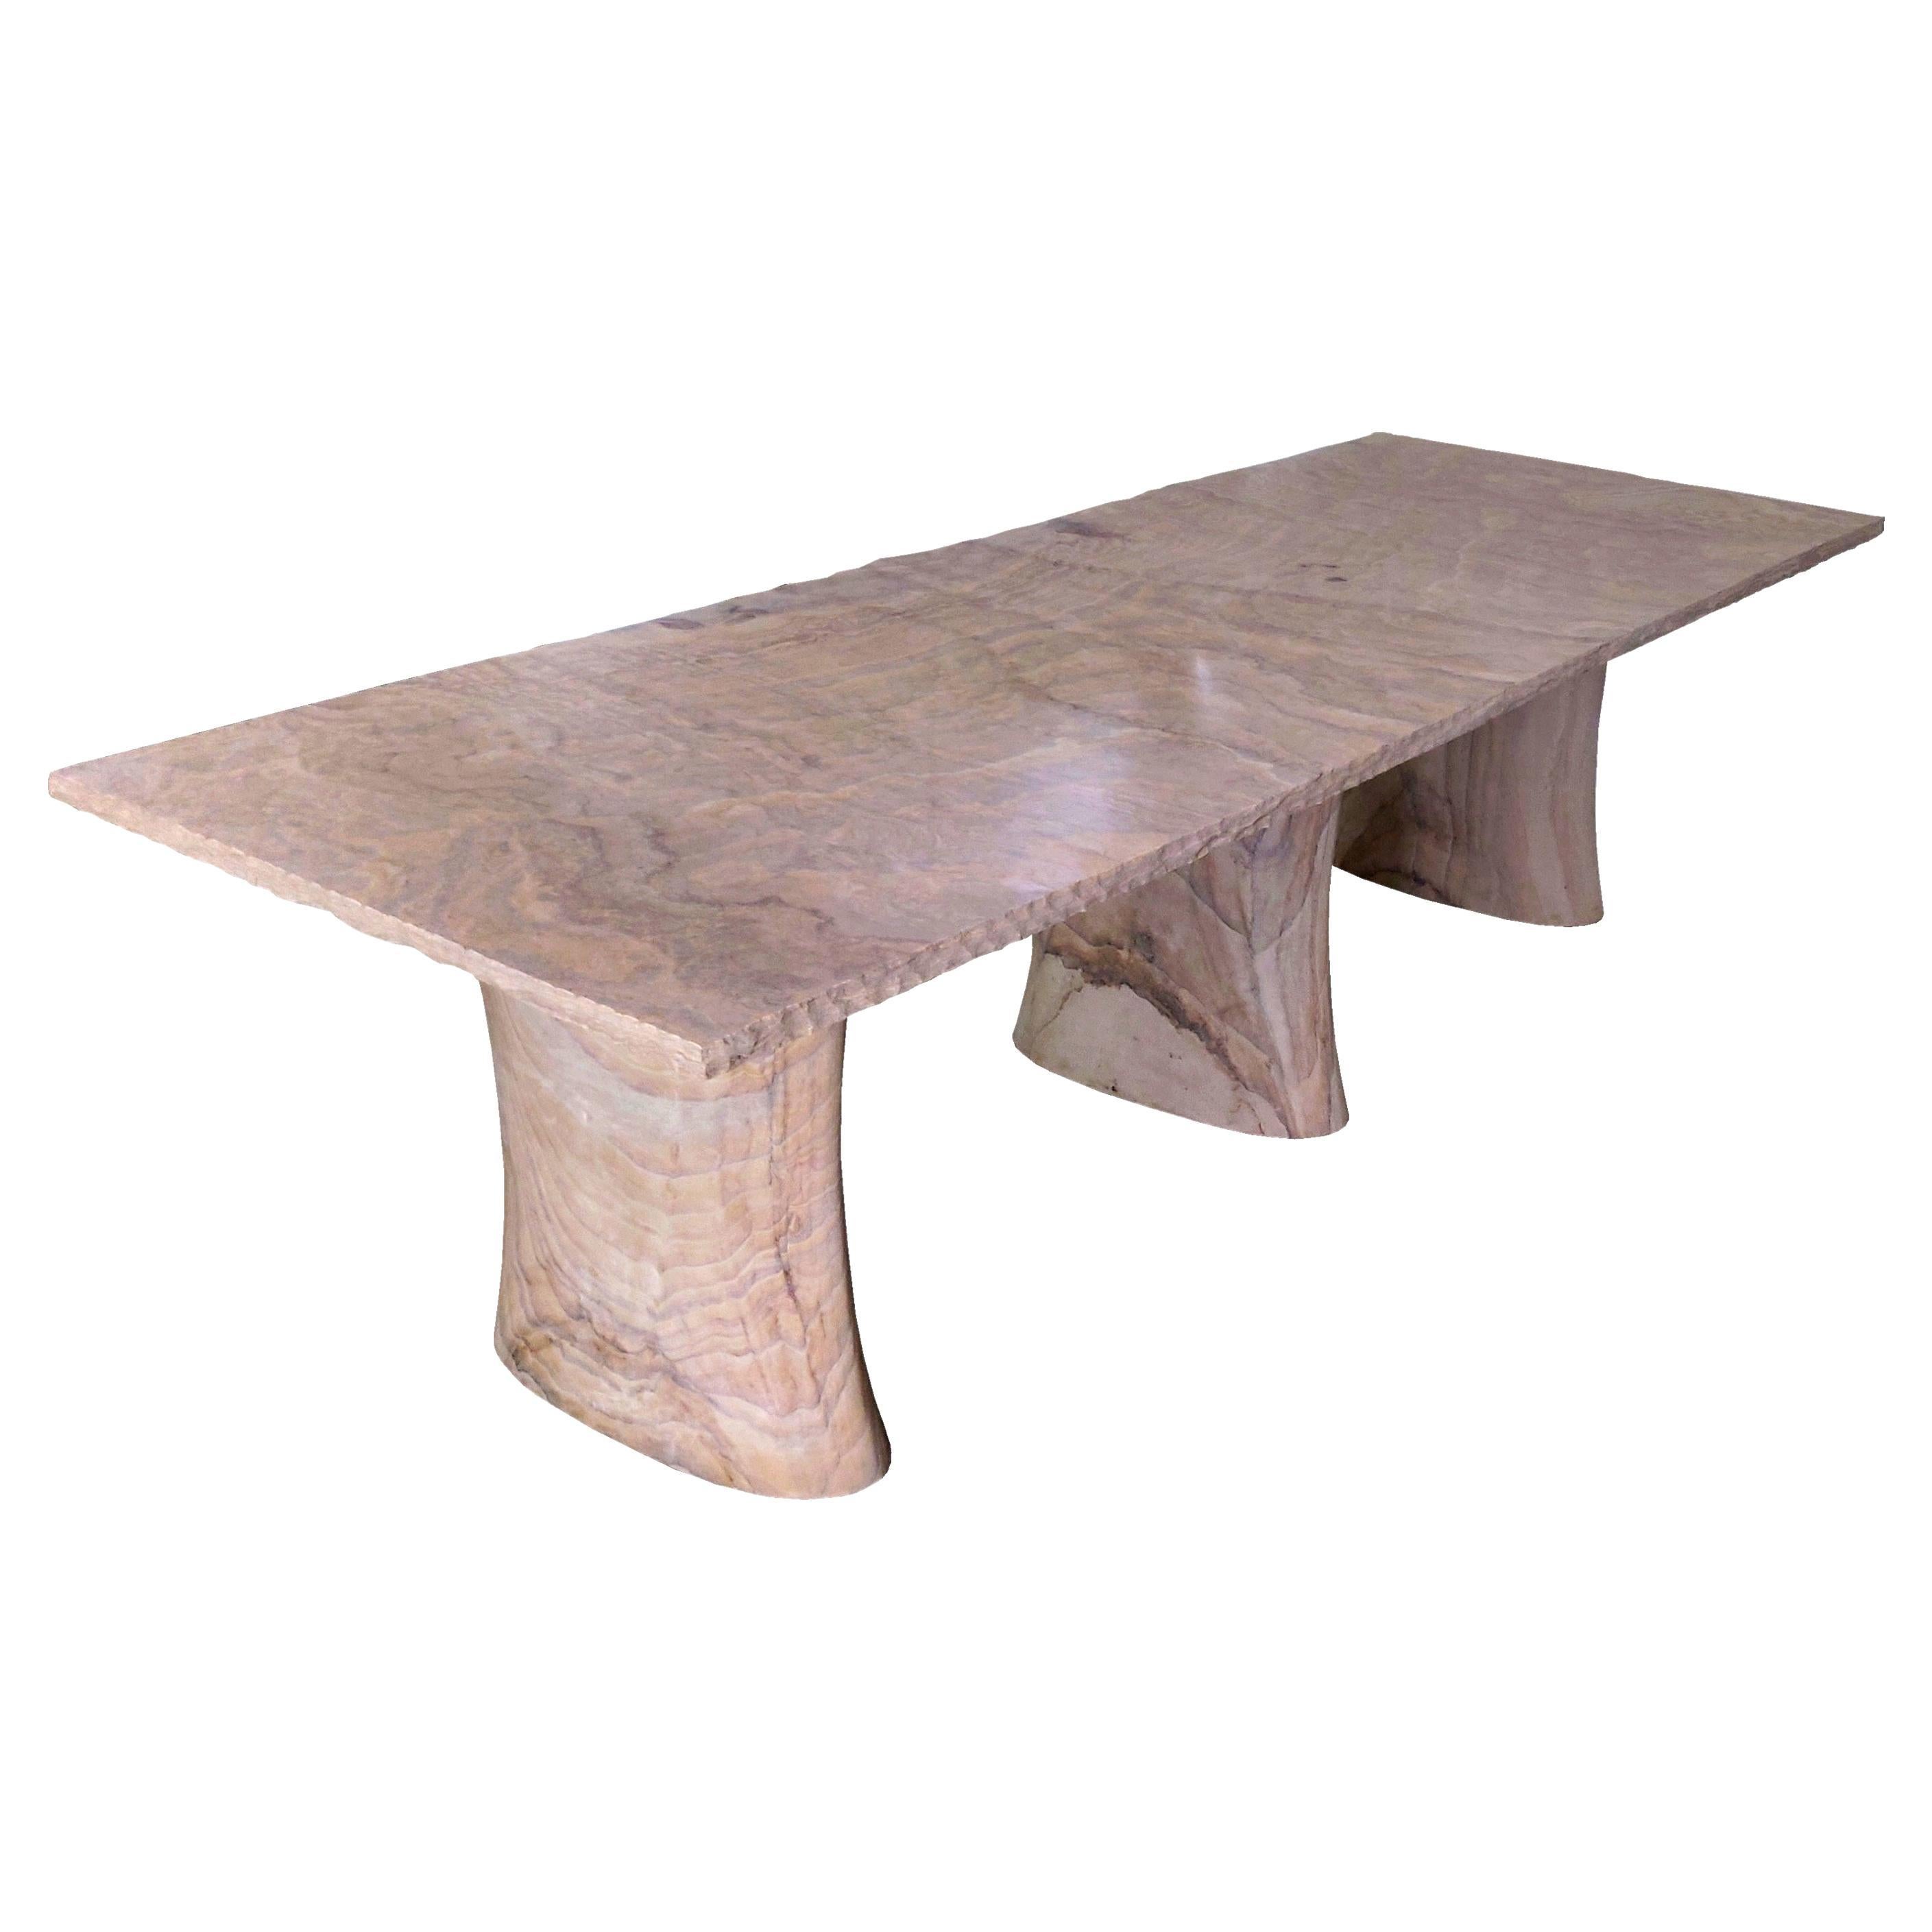 Konferenztisch handgeschnitzt aus Sandstein. Dieser skandinavisch-moderne Konferenztisch von Paul Mathieu wird von Hand aus massiven Blöcken aus Regenbogen-Teakholz-Stein geschnitzt, einem seltenen Sandstein, der die Maserung eines exotischen Holzes